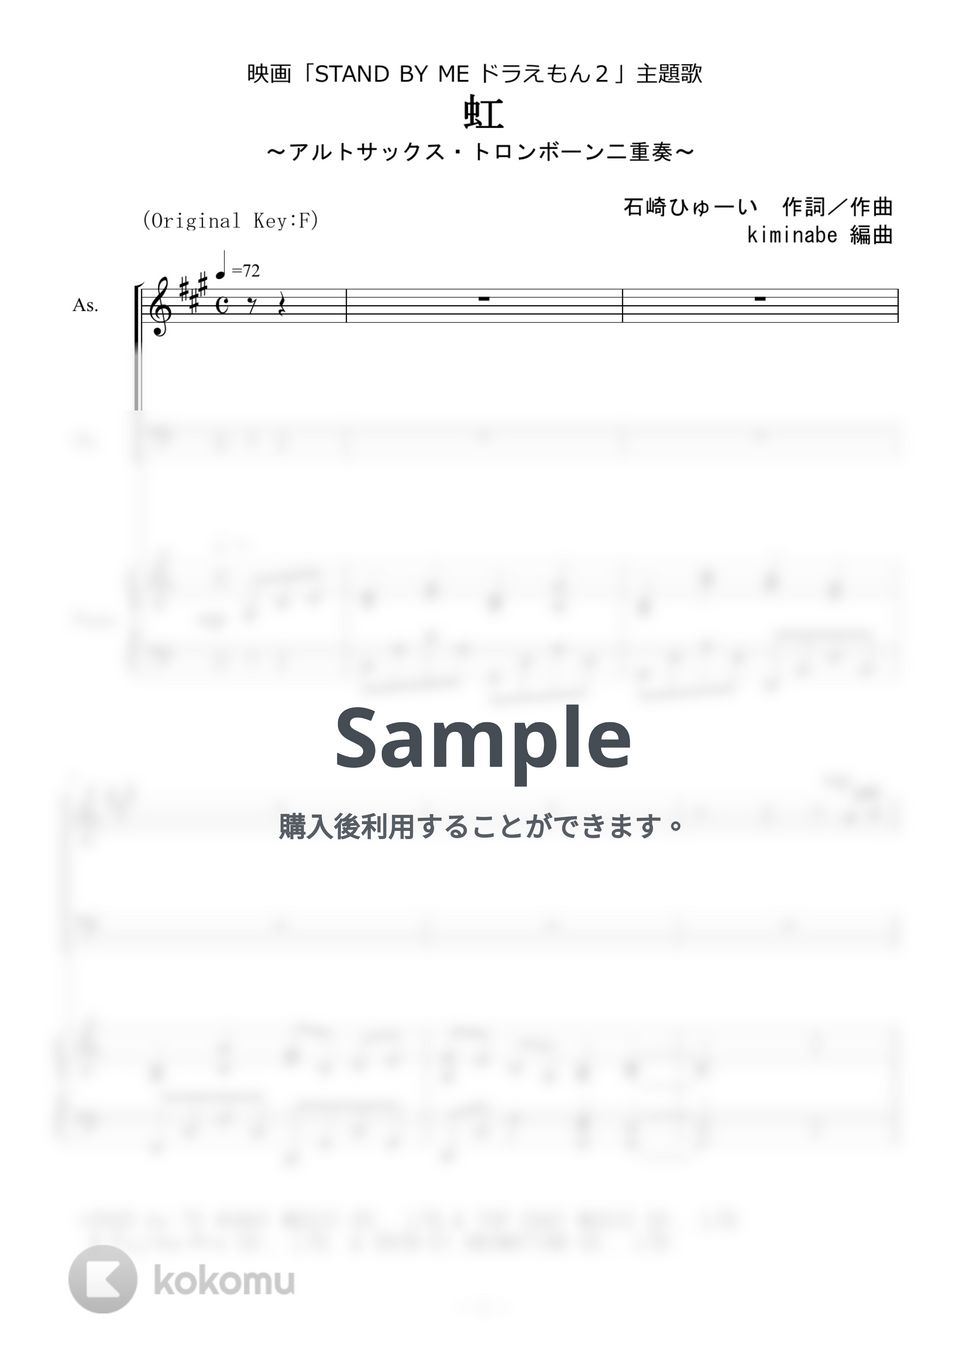 菅田将暉 - 虹 (アルトサックス・トロンボーン二重奏) by kiminabe